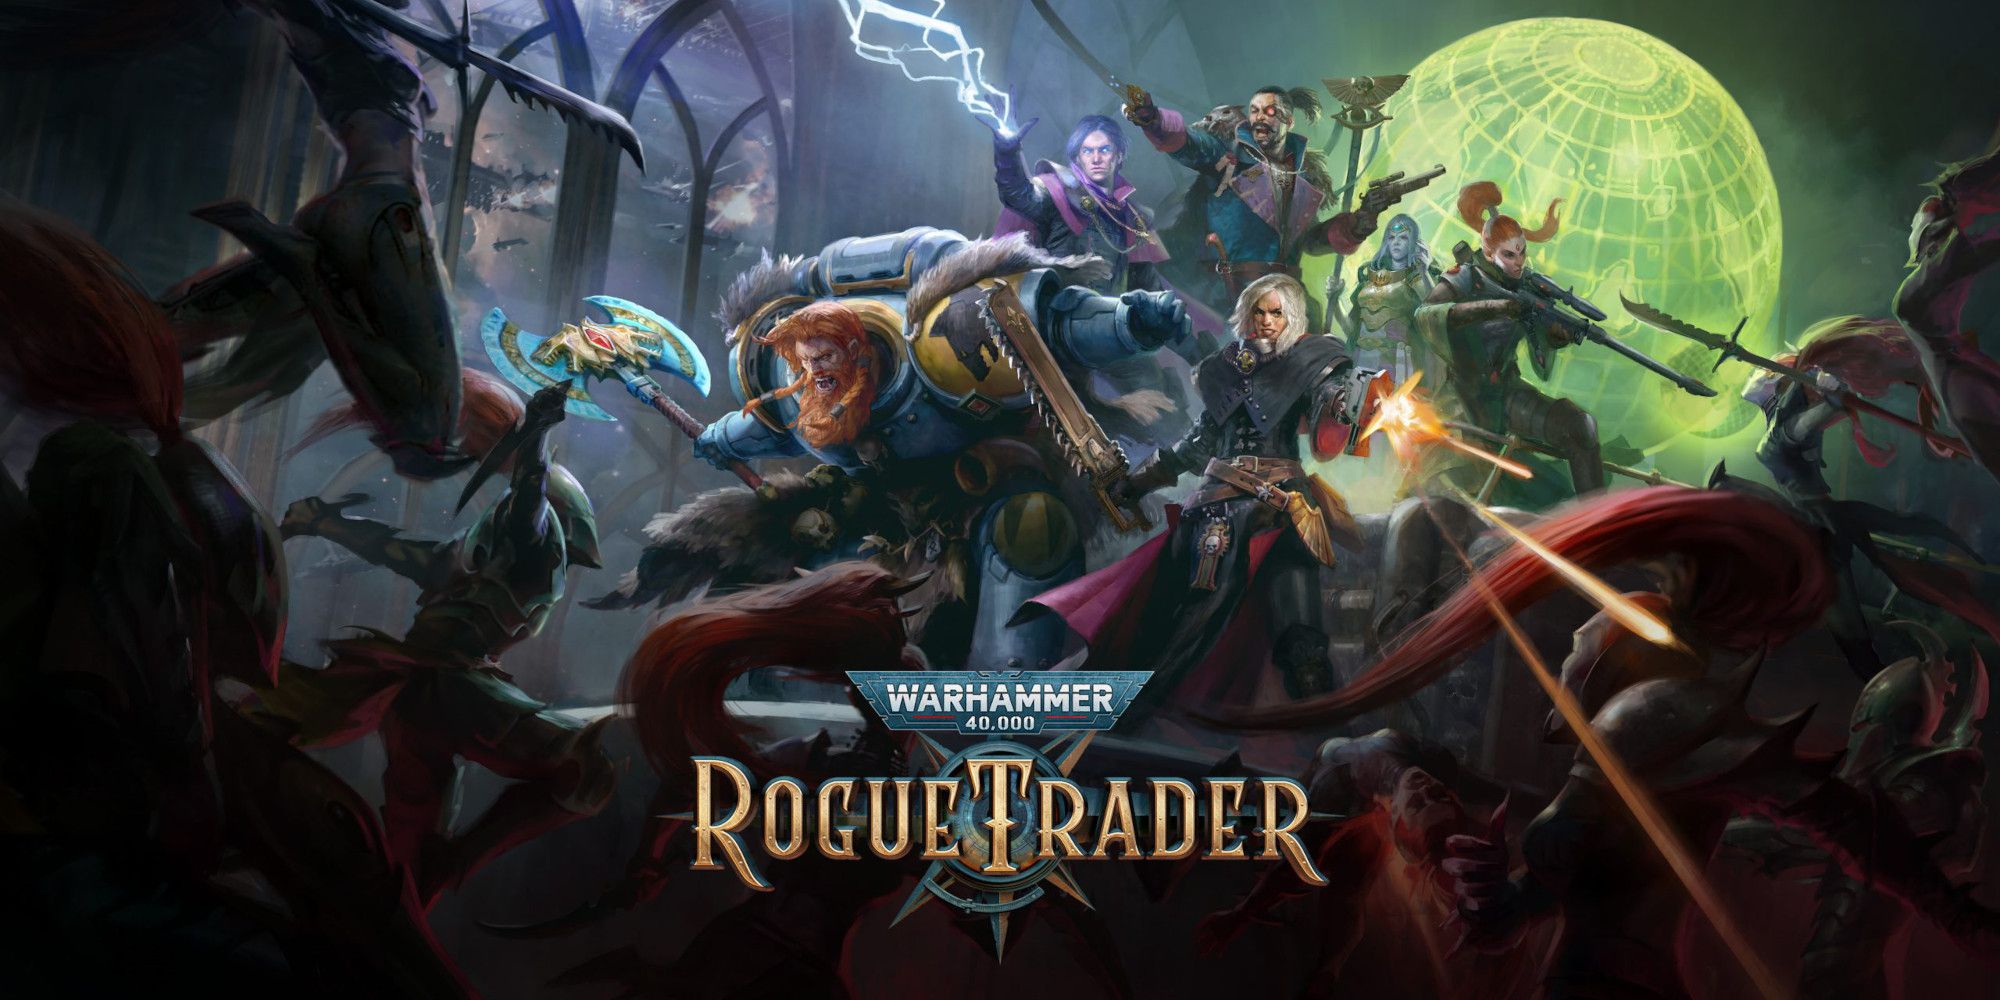 Warhammer 40,000: Rogue Trader Review: “Entiende de qué se trata Warhammer 40,000”